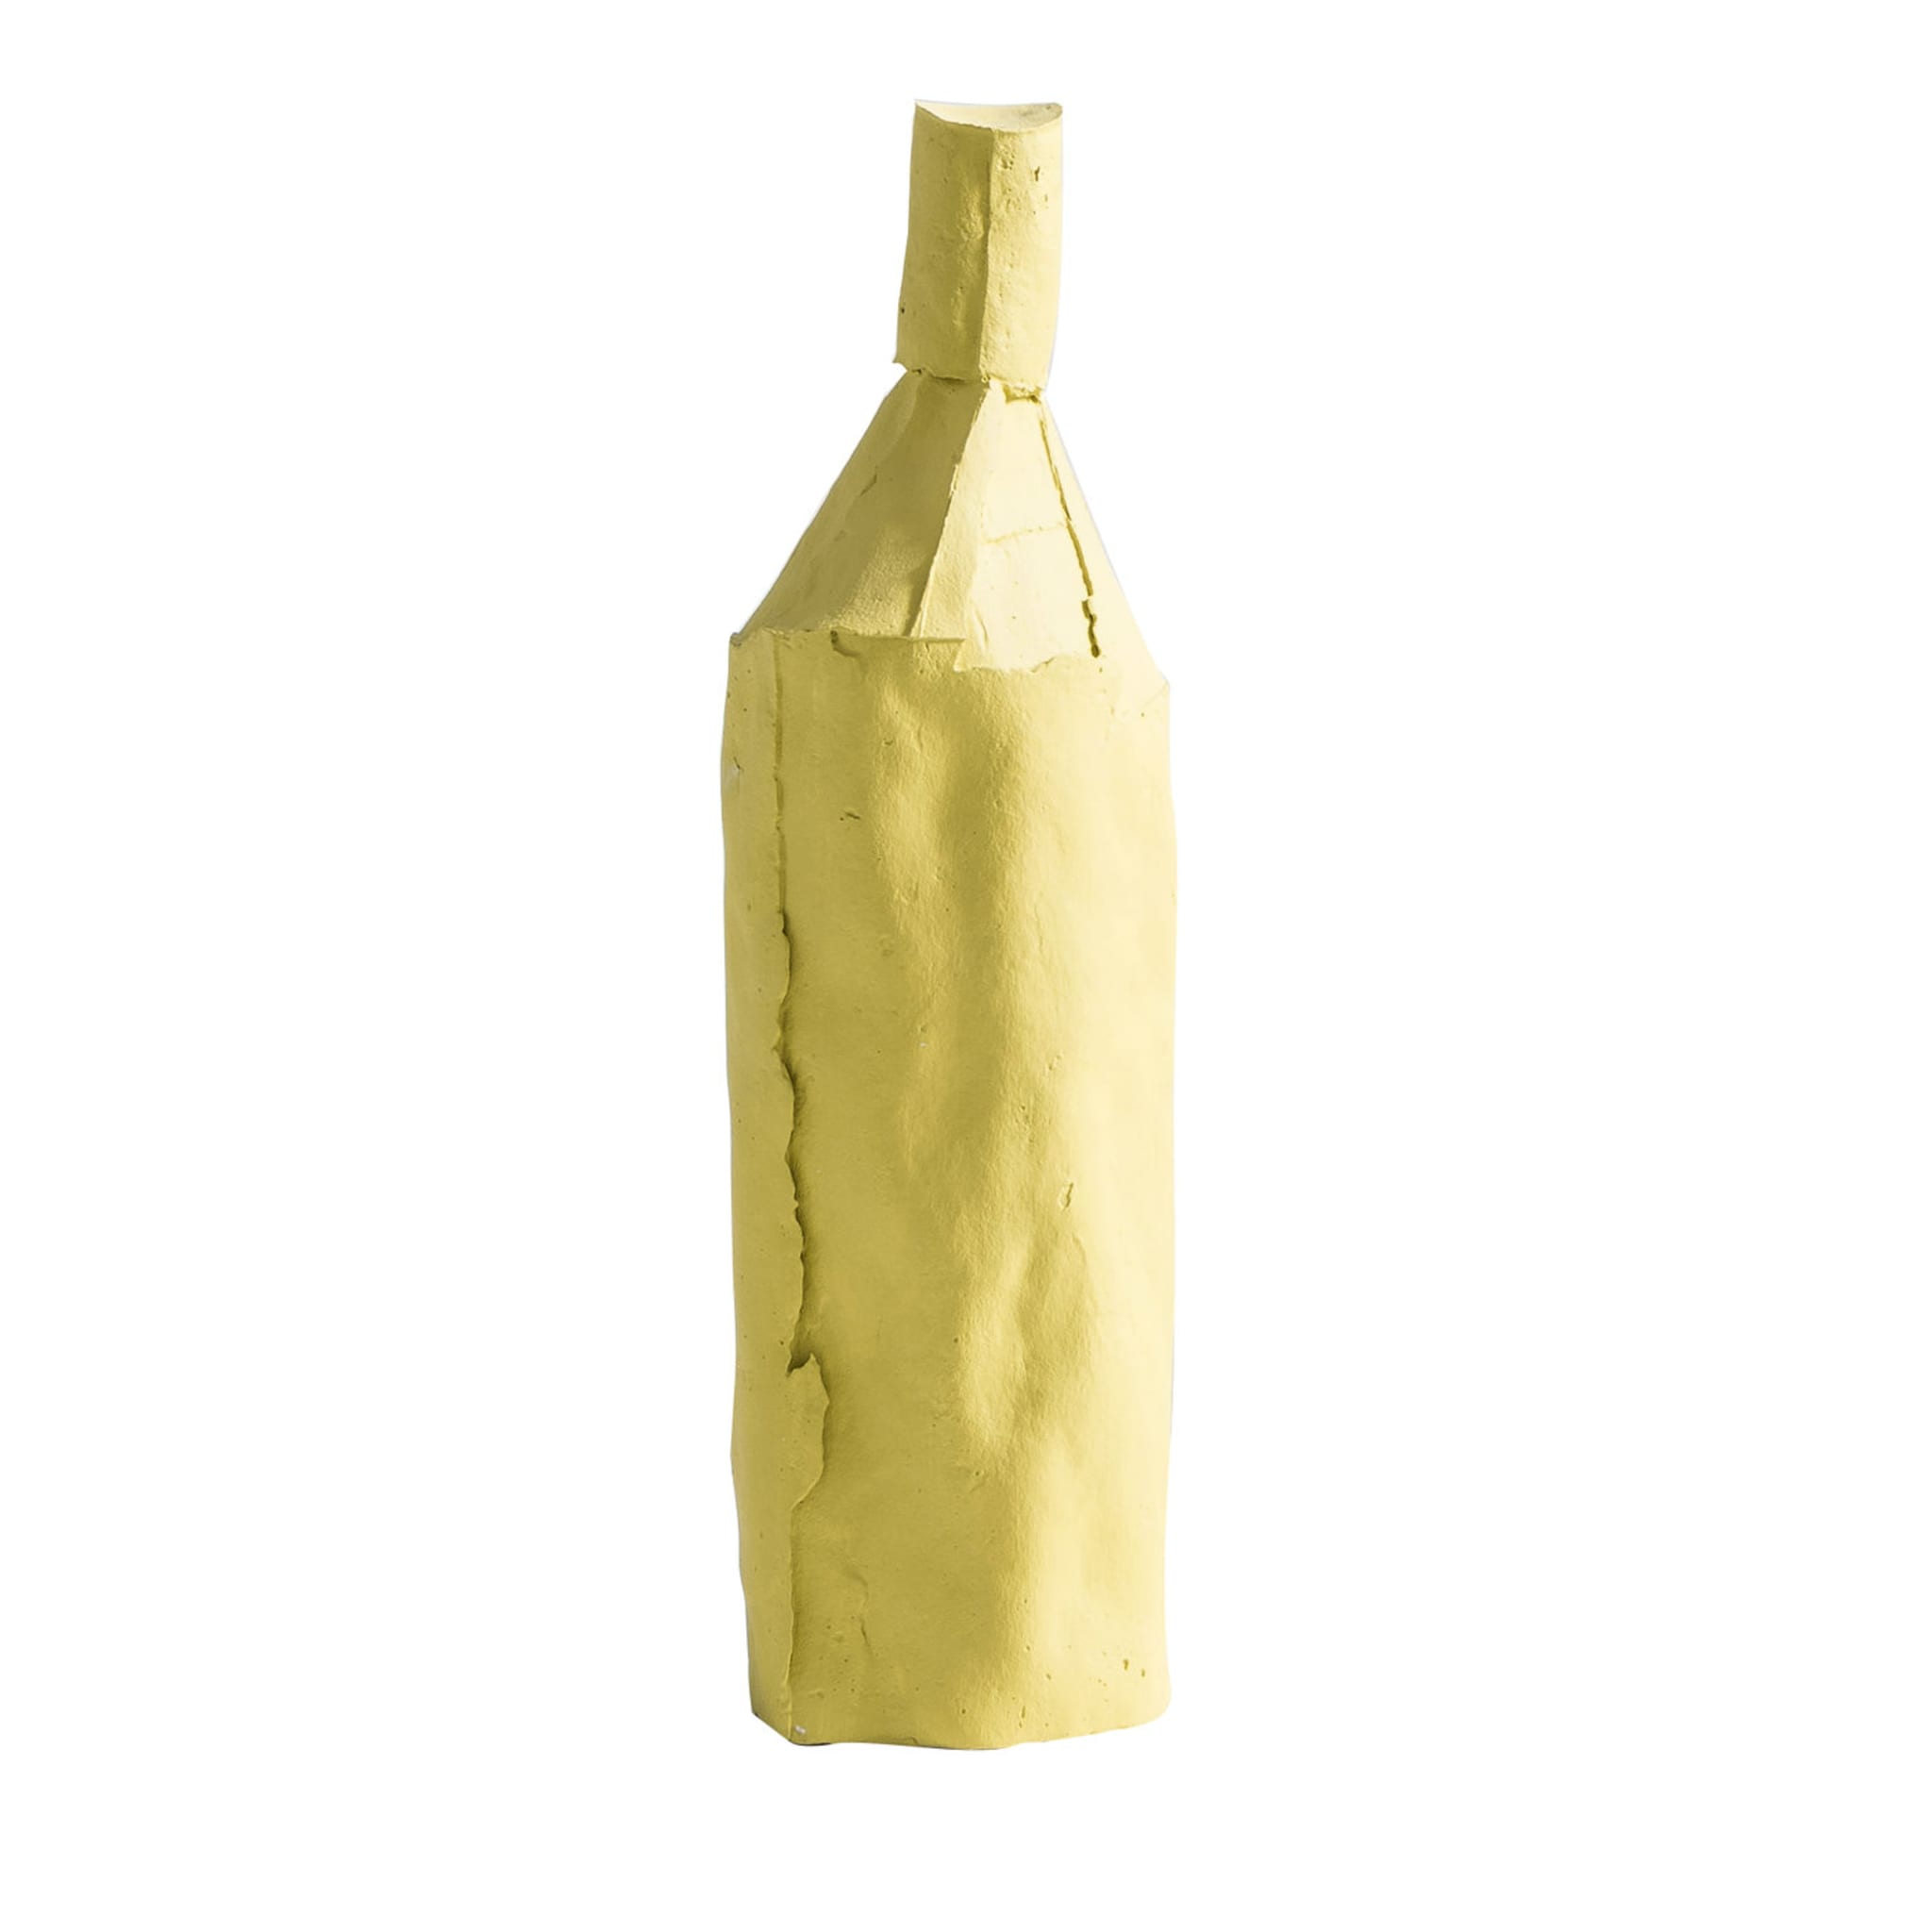 Cartocci Liscia Gelb Dekorative Flasche - Hauptansicht